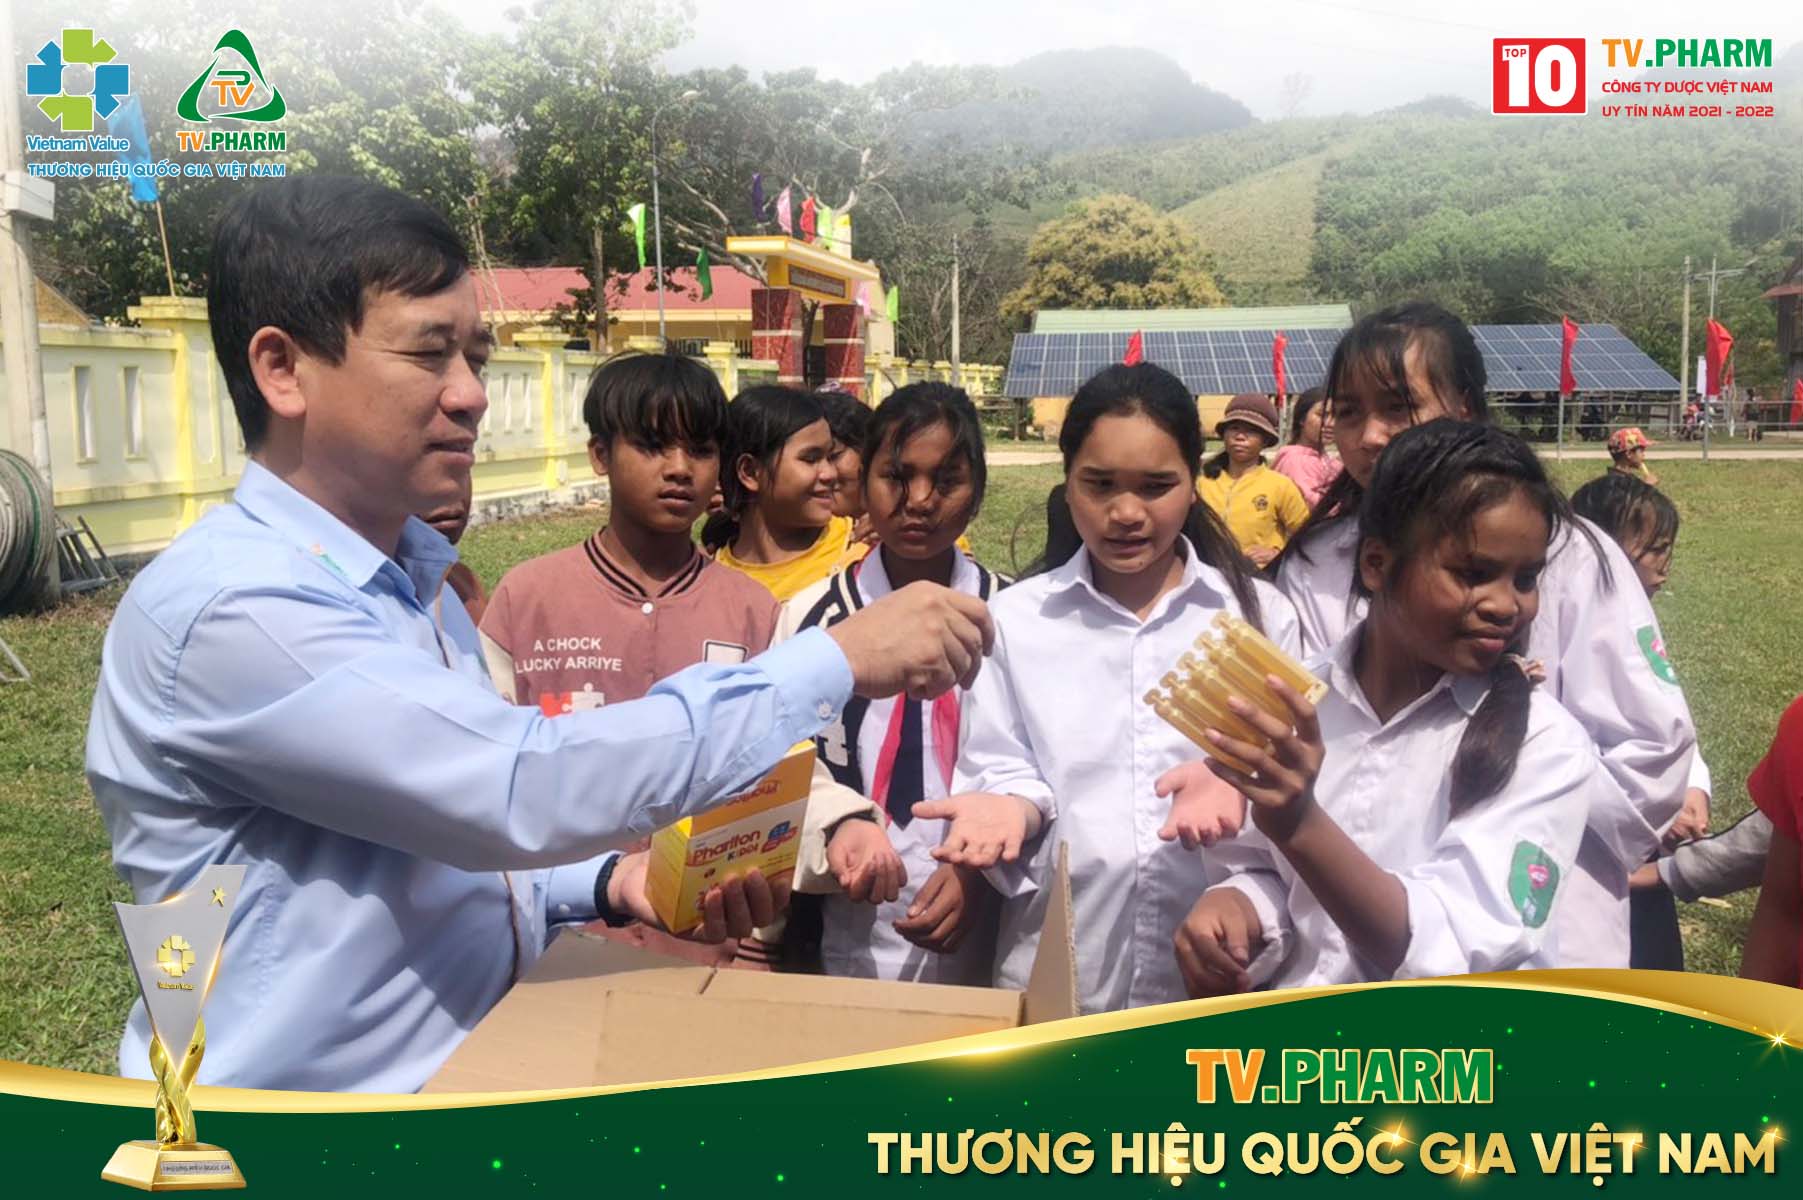 Khoảng 300 hộ gia đình tại xã Thượng Trạch, Quảng Bình được nhận thuốc điều trị và thực phẩm hỗ trợ sức khoẻ từ TV.PHARM